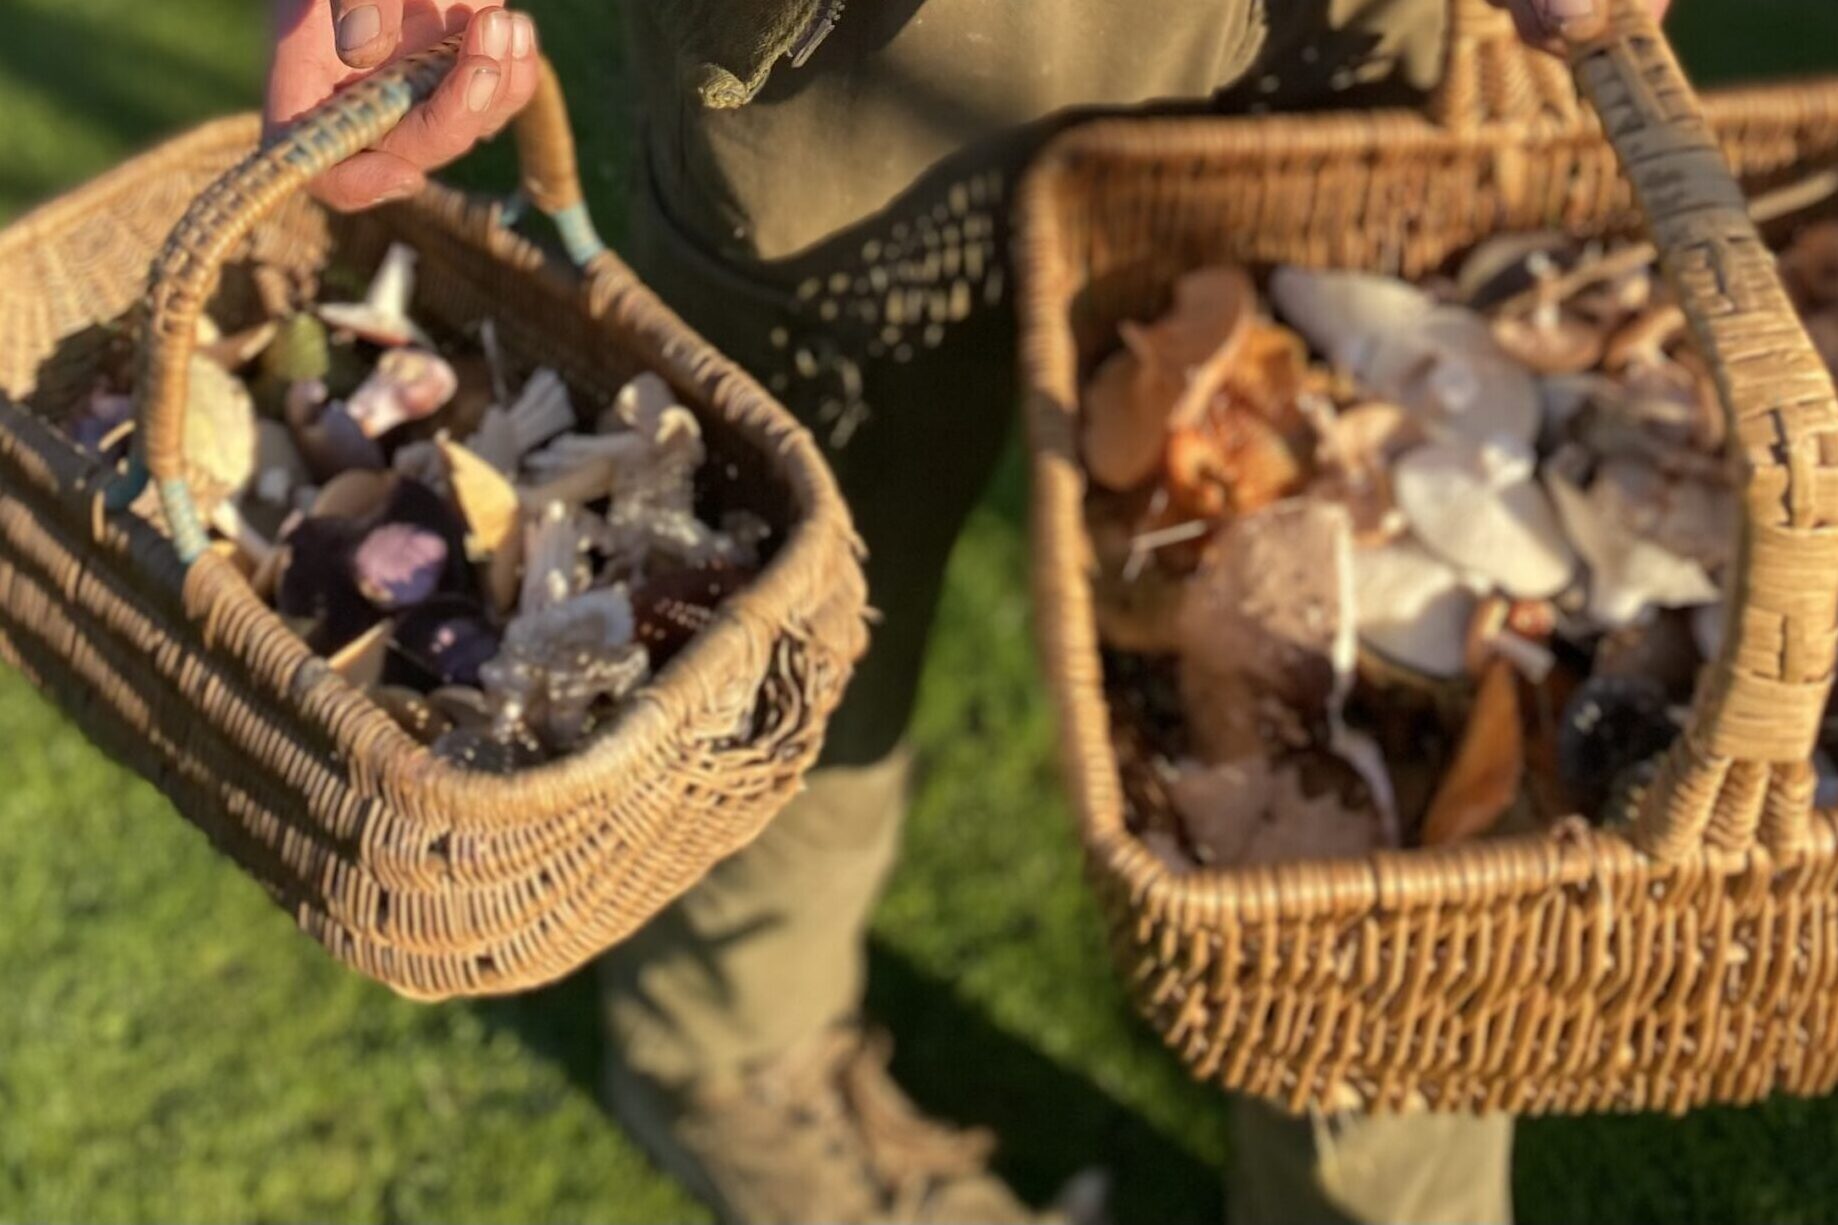 wild mushroom foraging classes